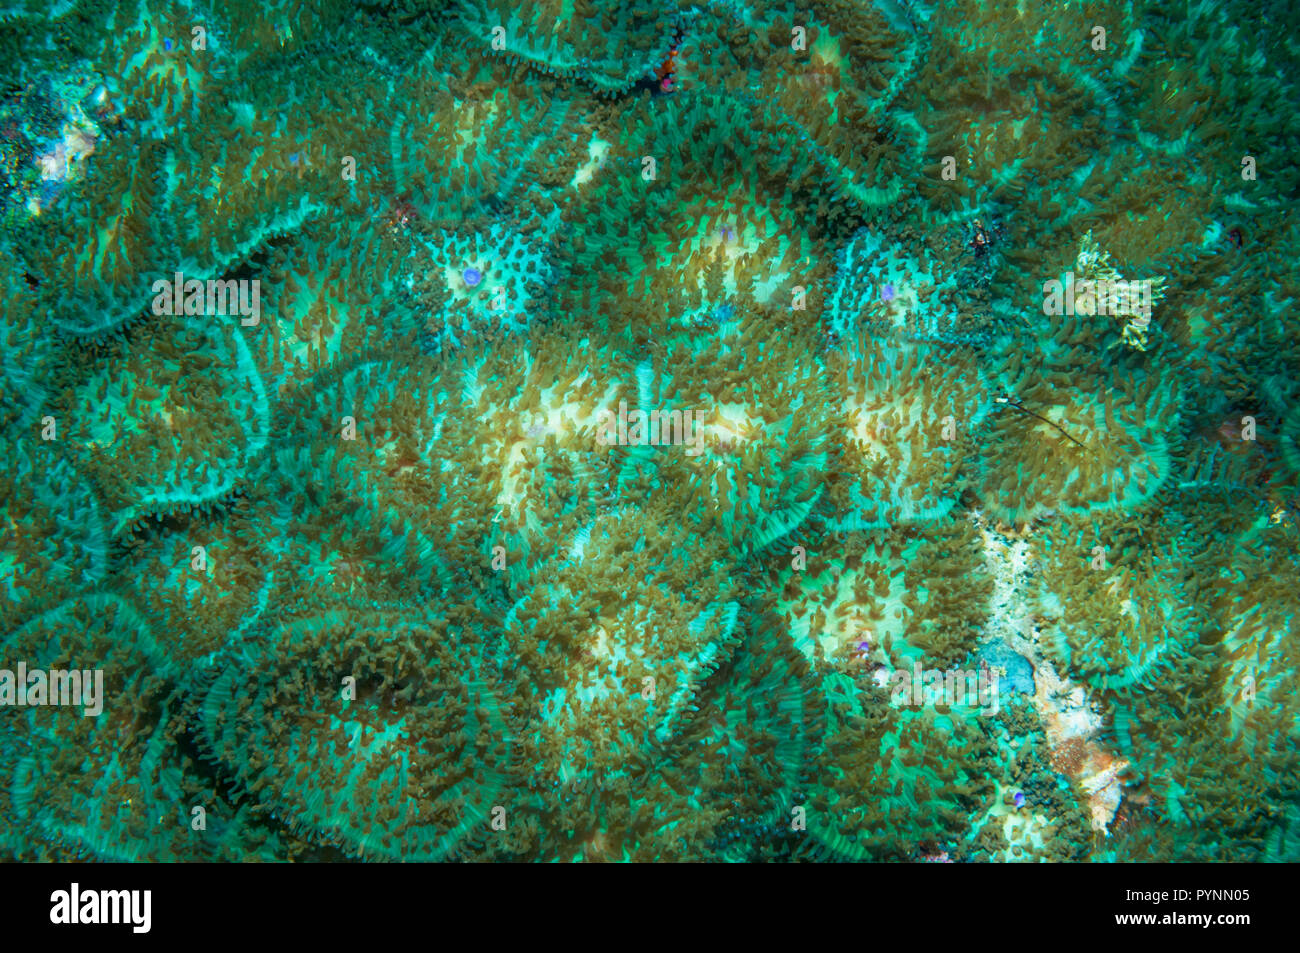 Anémone disque [Discosoma sp.]. Discosomatidae est une famille de cnidaires marins étroitement liée à la véritable d'anémones de mer [Actiniaria]. Banque D'Images